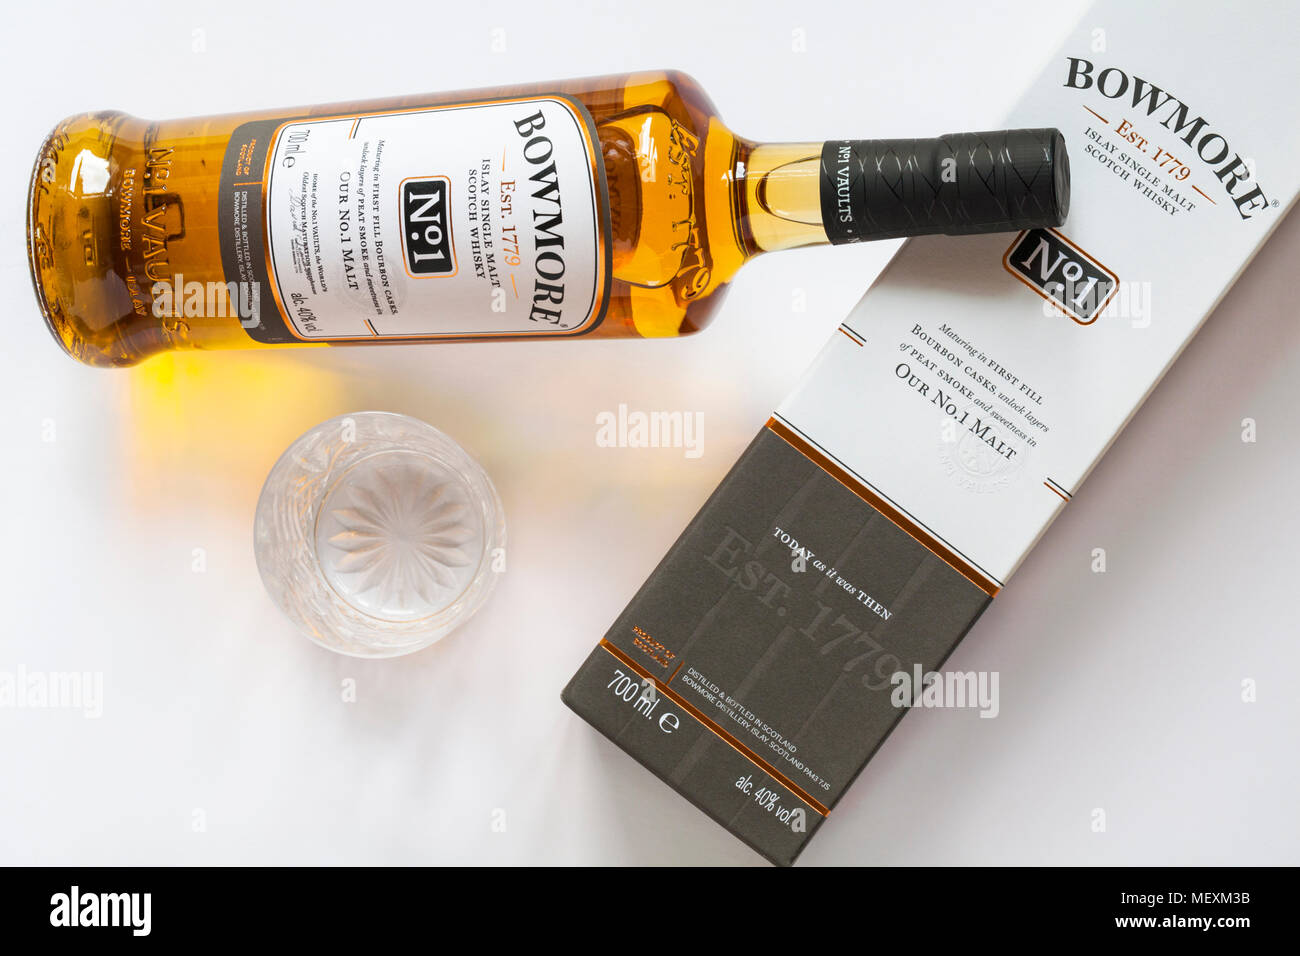 Bottiglia di Bowmore n. 1 Islay single malt Scotch whisky sulla scatola con vetro vuoto impostato su sfondo bianco Foto Stock